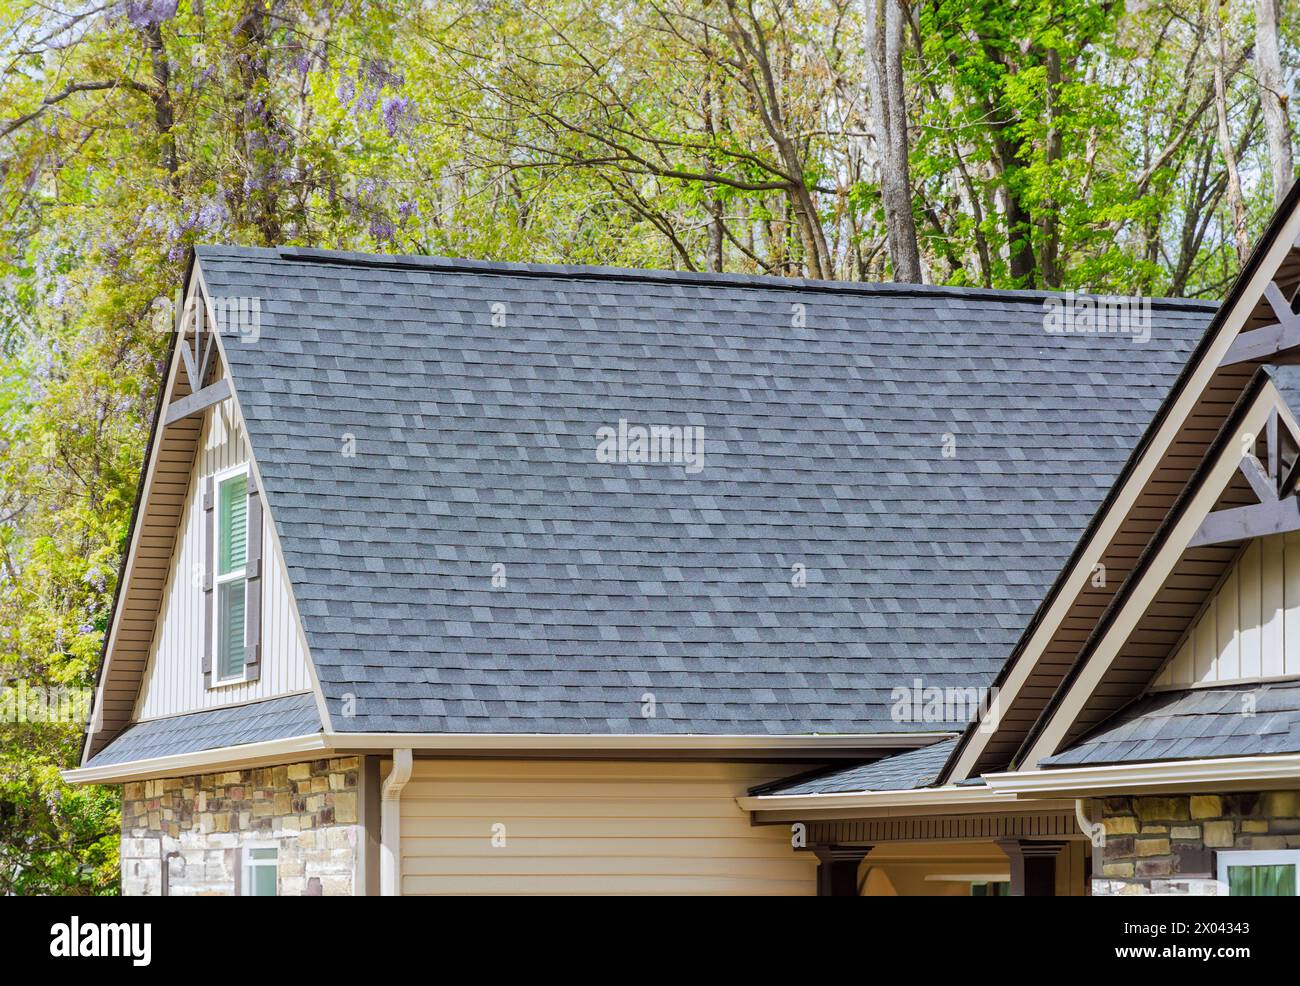 Les bardeaux d'asphalte sont utilisés comme matériaux de toiture sur le toit de la maison nouvellement construite Banque D'Images